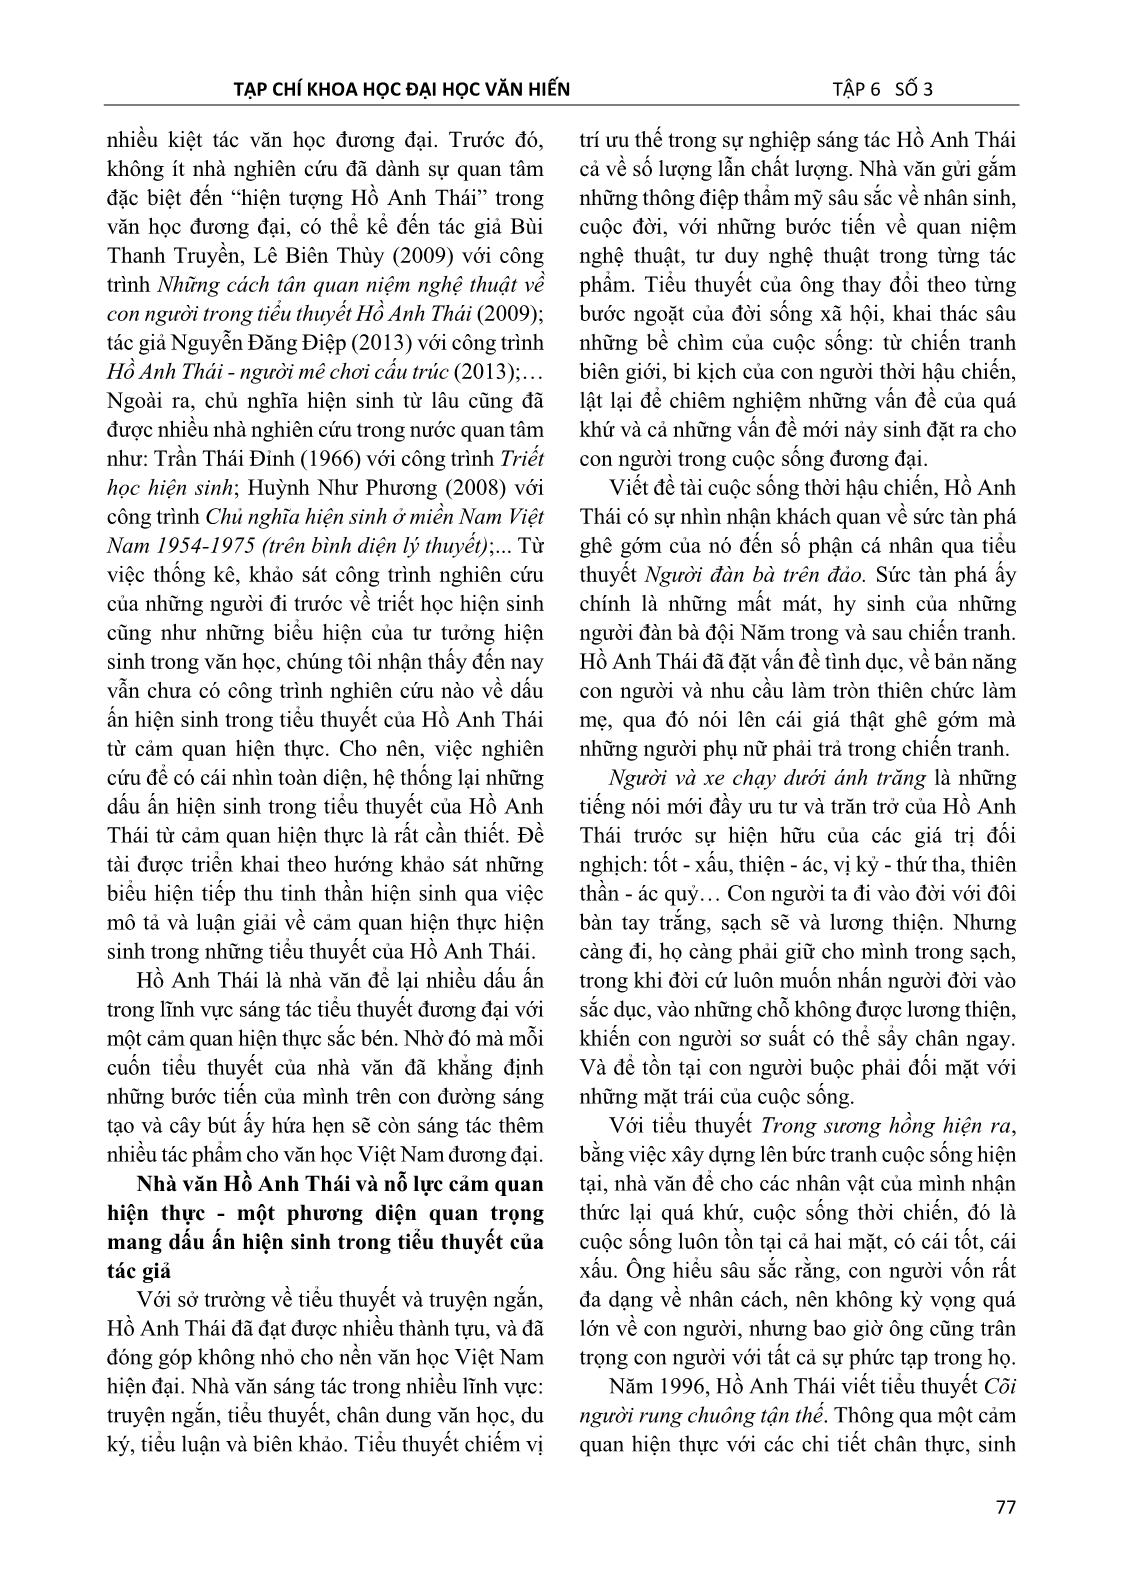 Dấu ấn hiện sinh trong tiểu thuyết Hồ Anh Thái nhìn từ cảm quan hiện thực trang 2